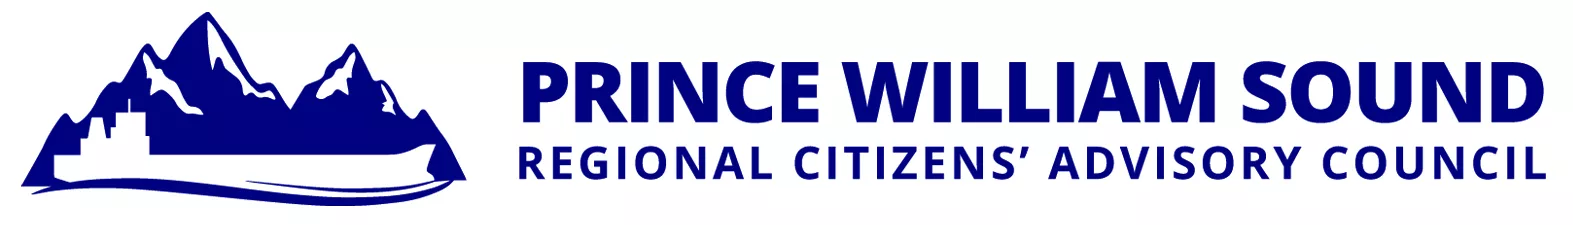 PWSRCAC Logo